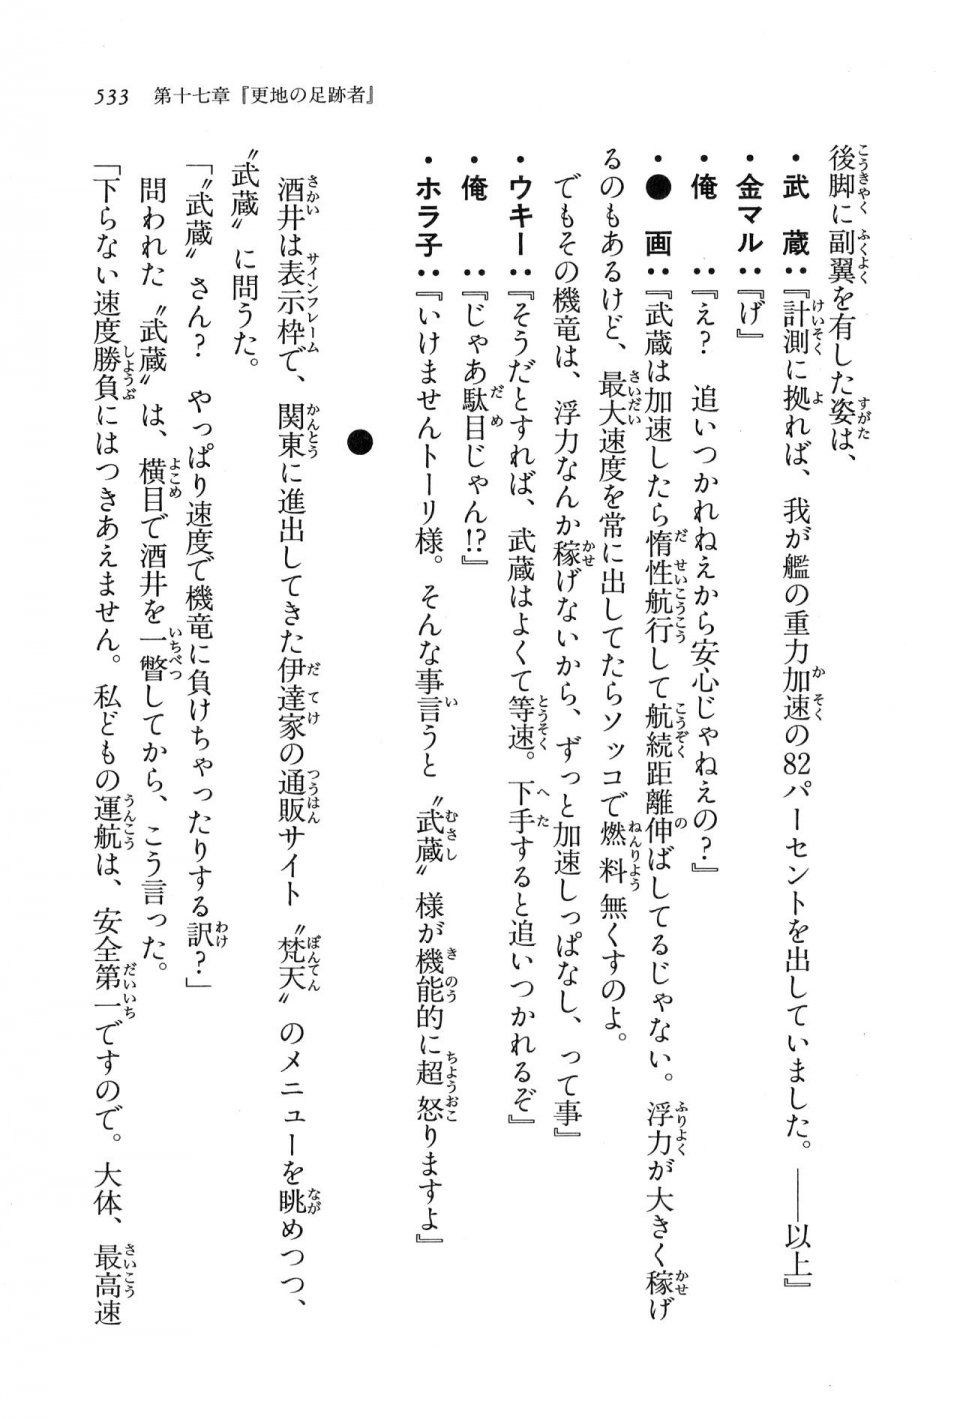 Kyoukai Senjou no Horizon LN Vol 16(7A) - Photo #533